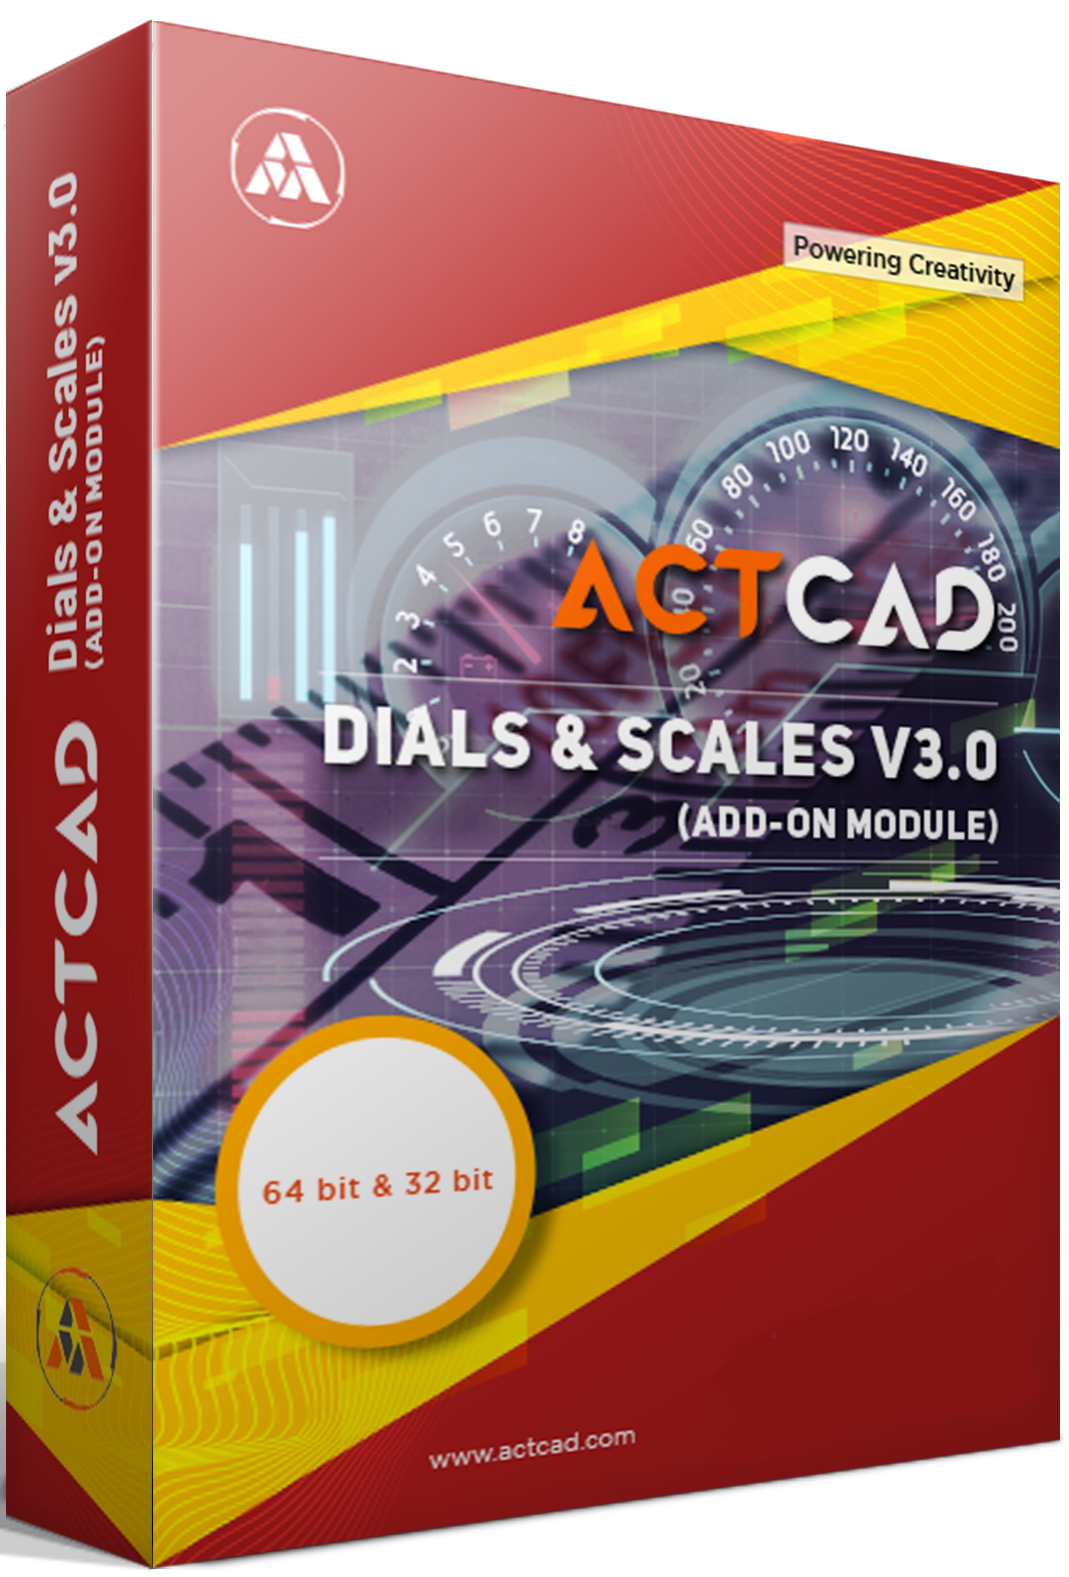 ACTCAD-Product-Box-2020-Dials-&-Scales-Mockup-Final-A